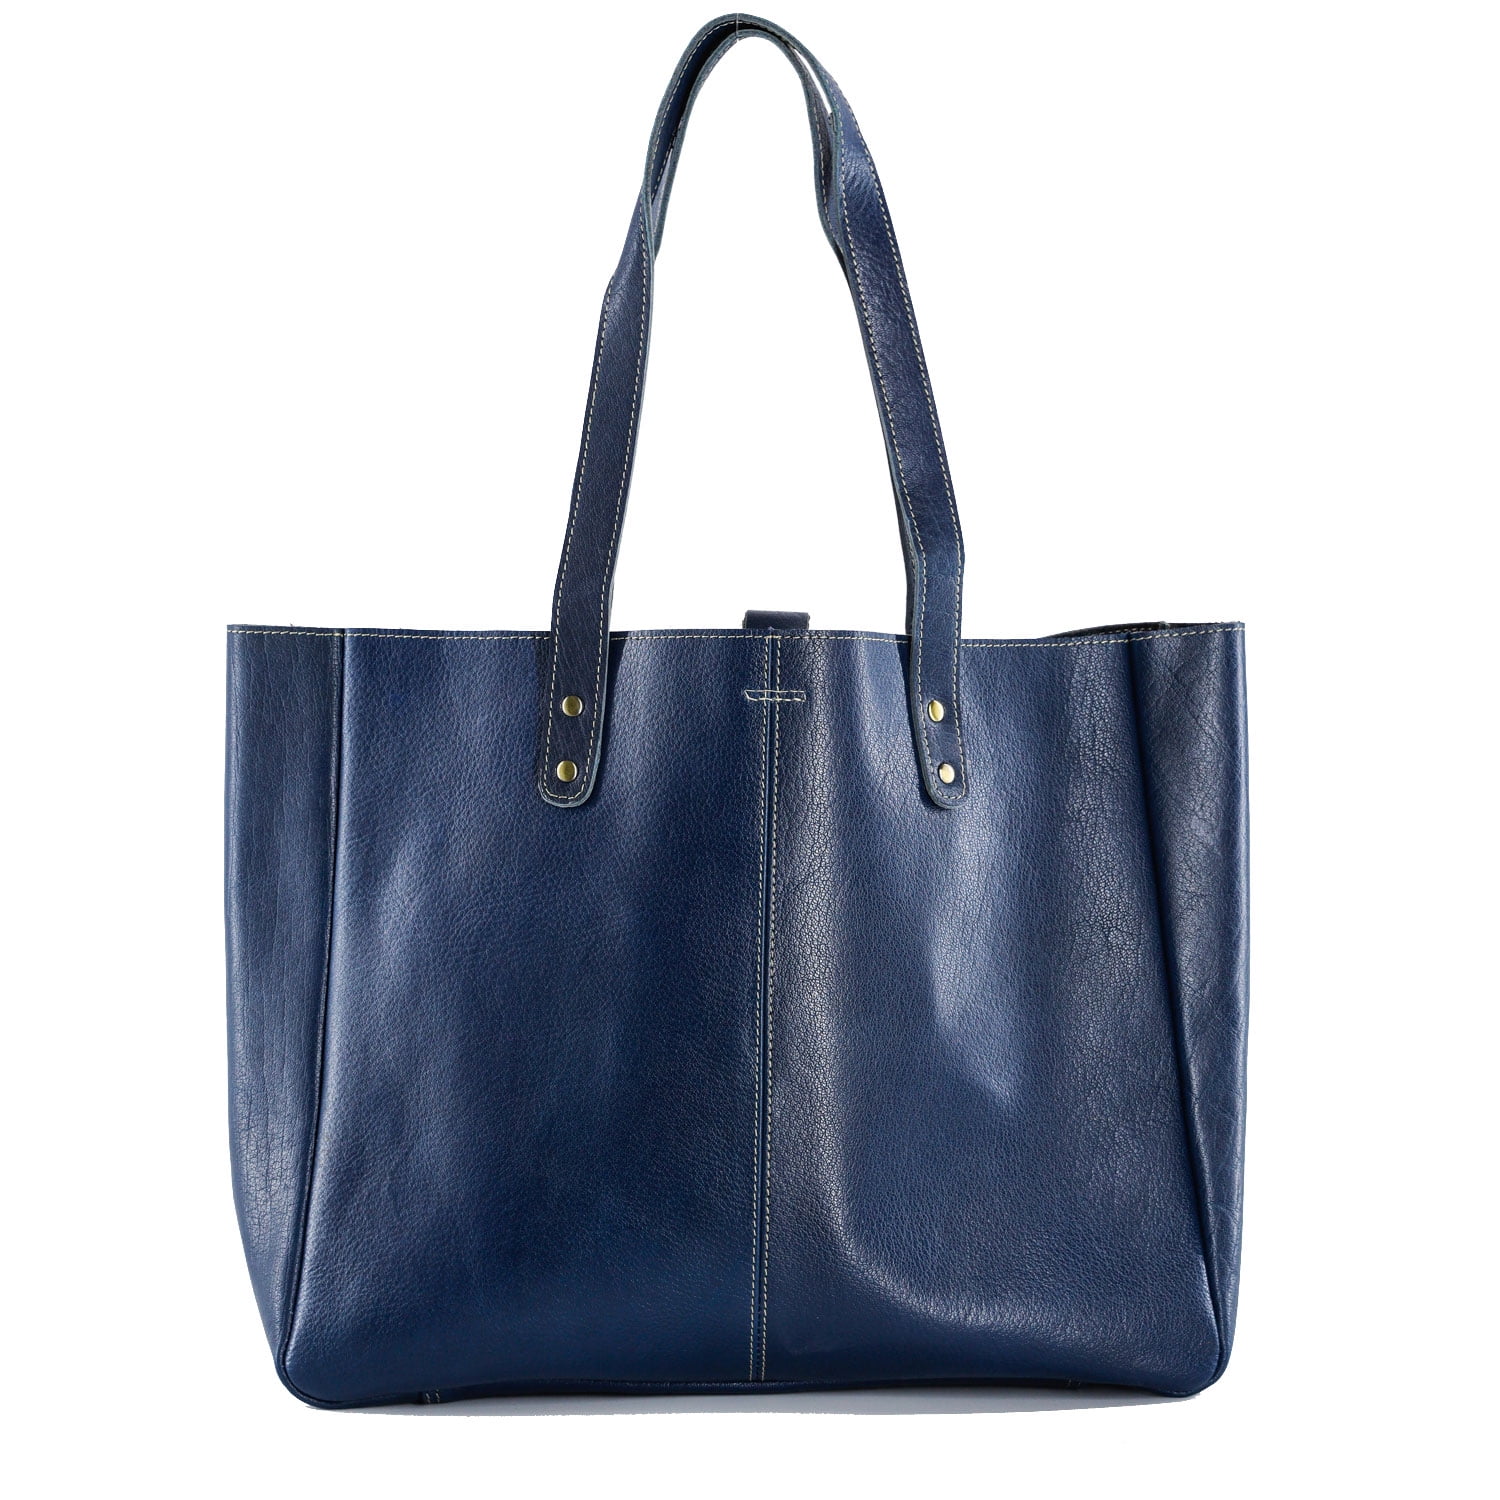 Komalc Leather Shoulder Bag Tote for Women Purse Satchel Travel Bag ...